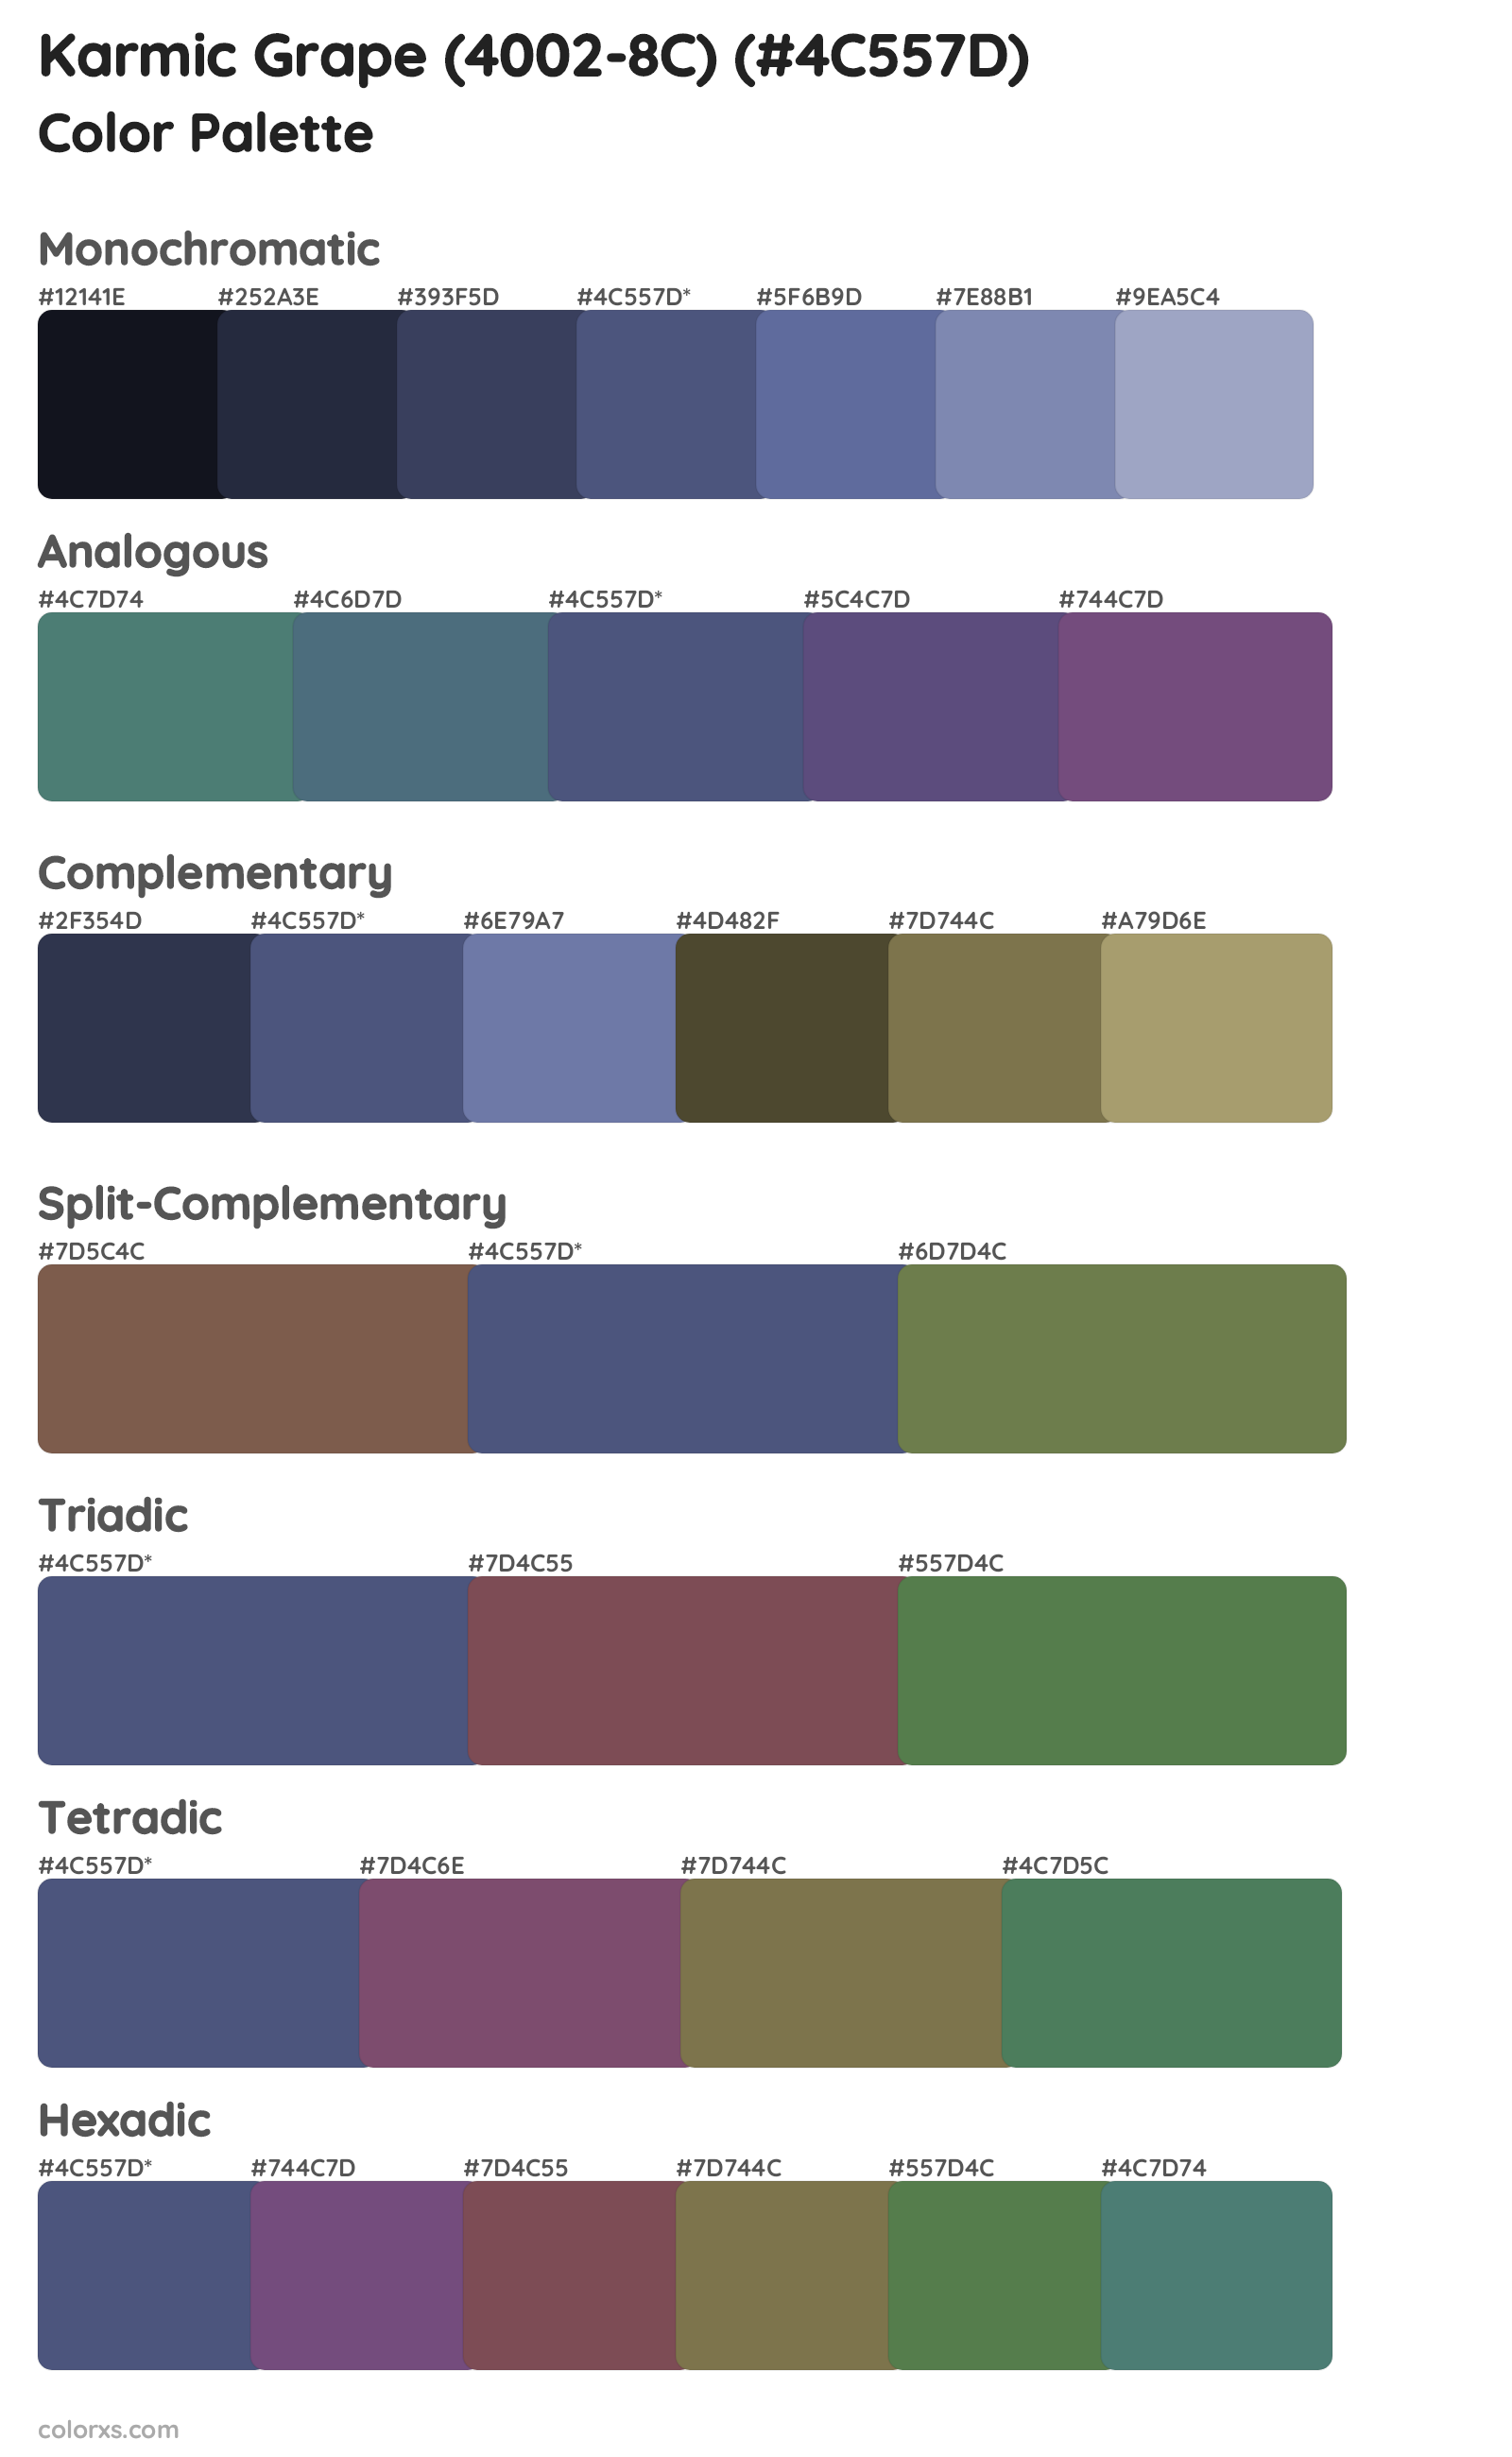 Karmic Grape (4002-8C) Color Scheme Palettes